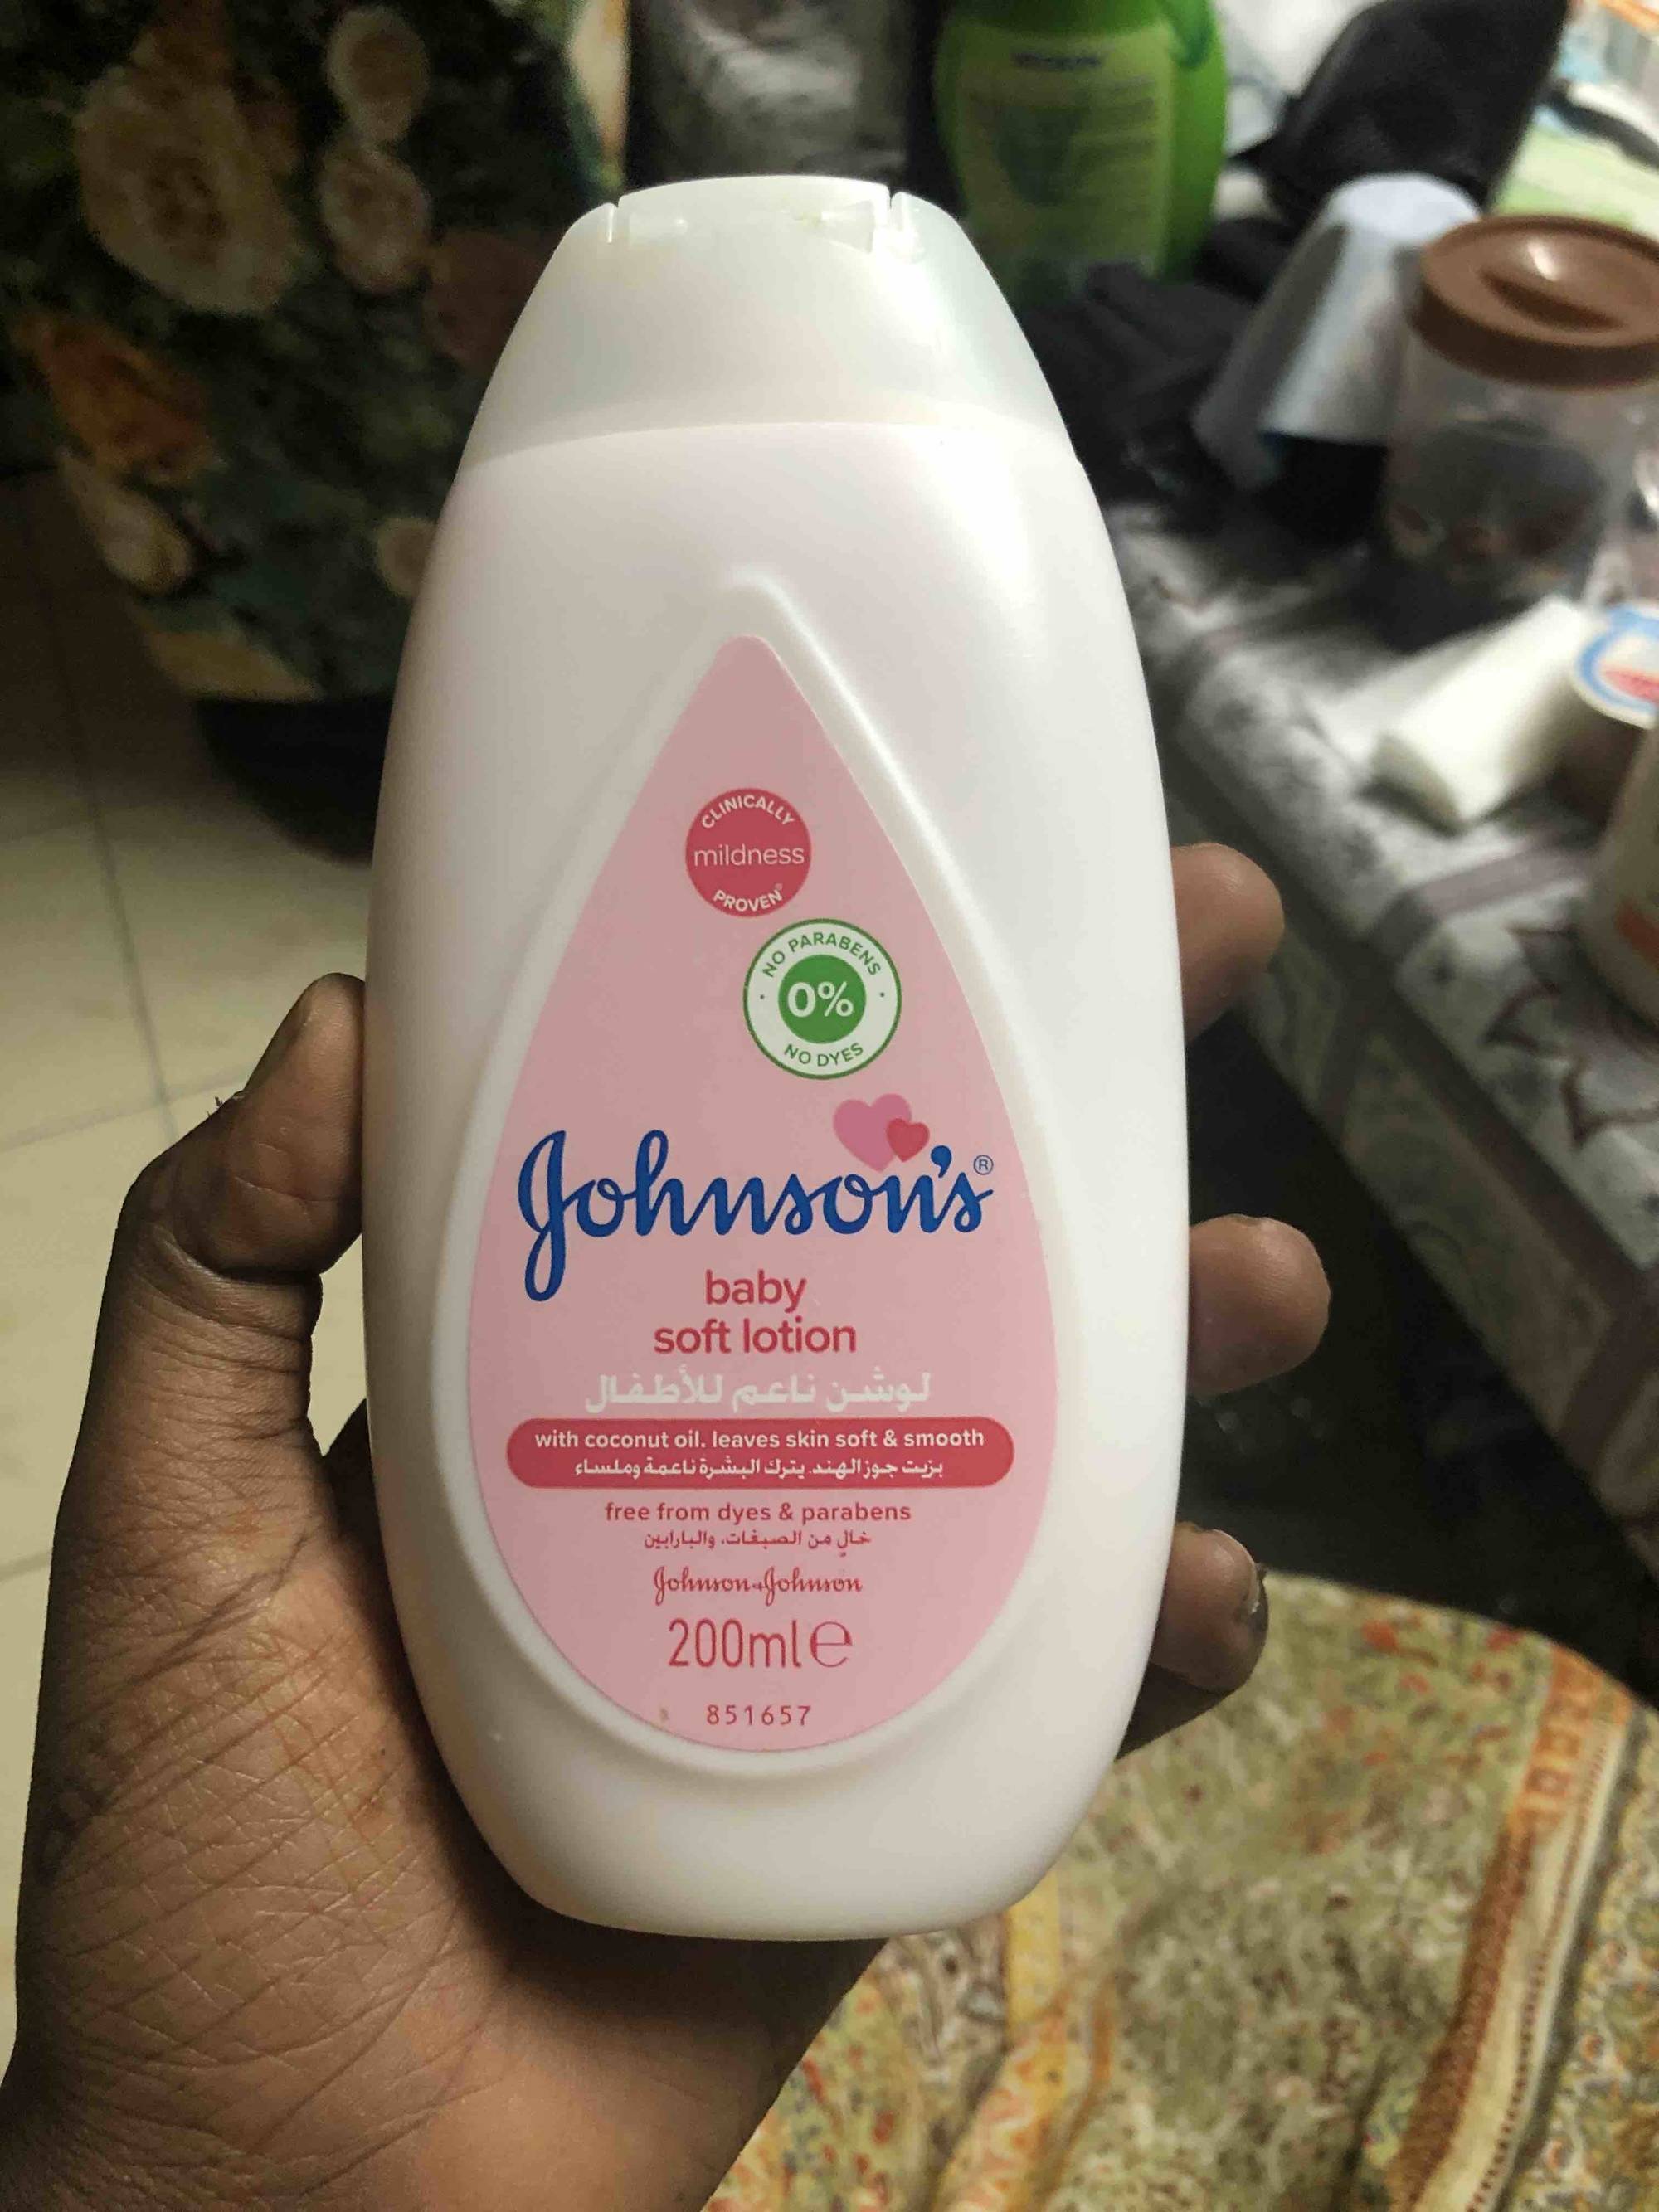 De nouveaux produits proposés par la marque Johnson's 